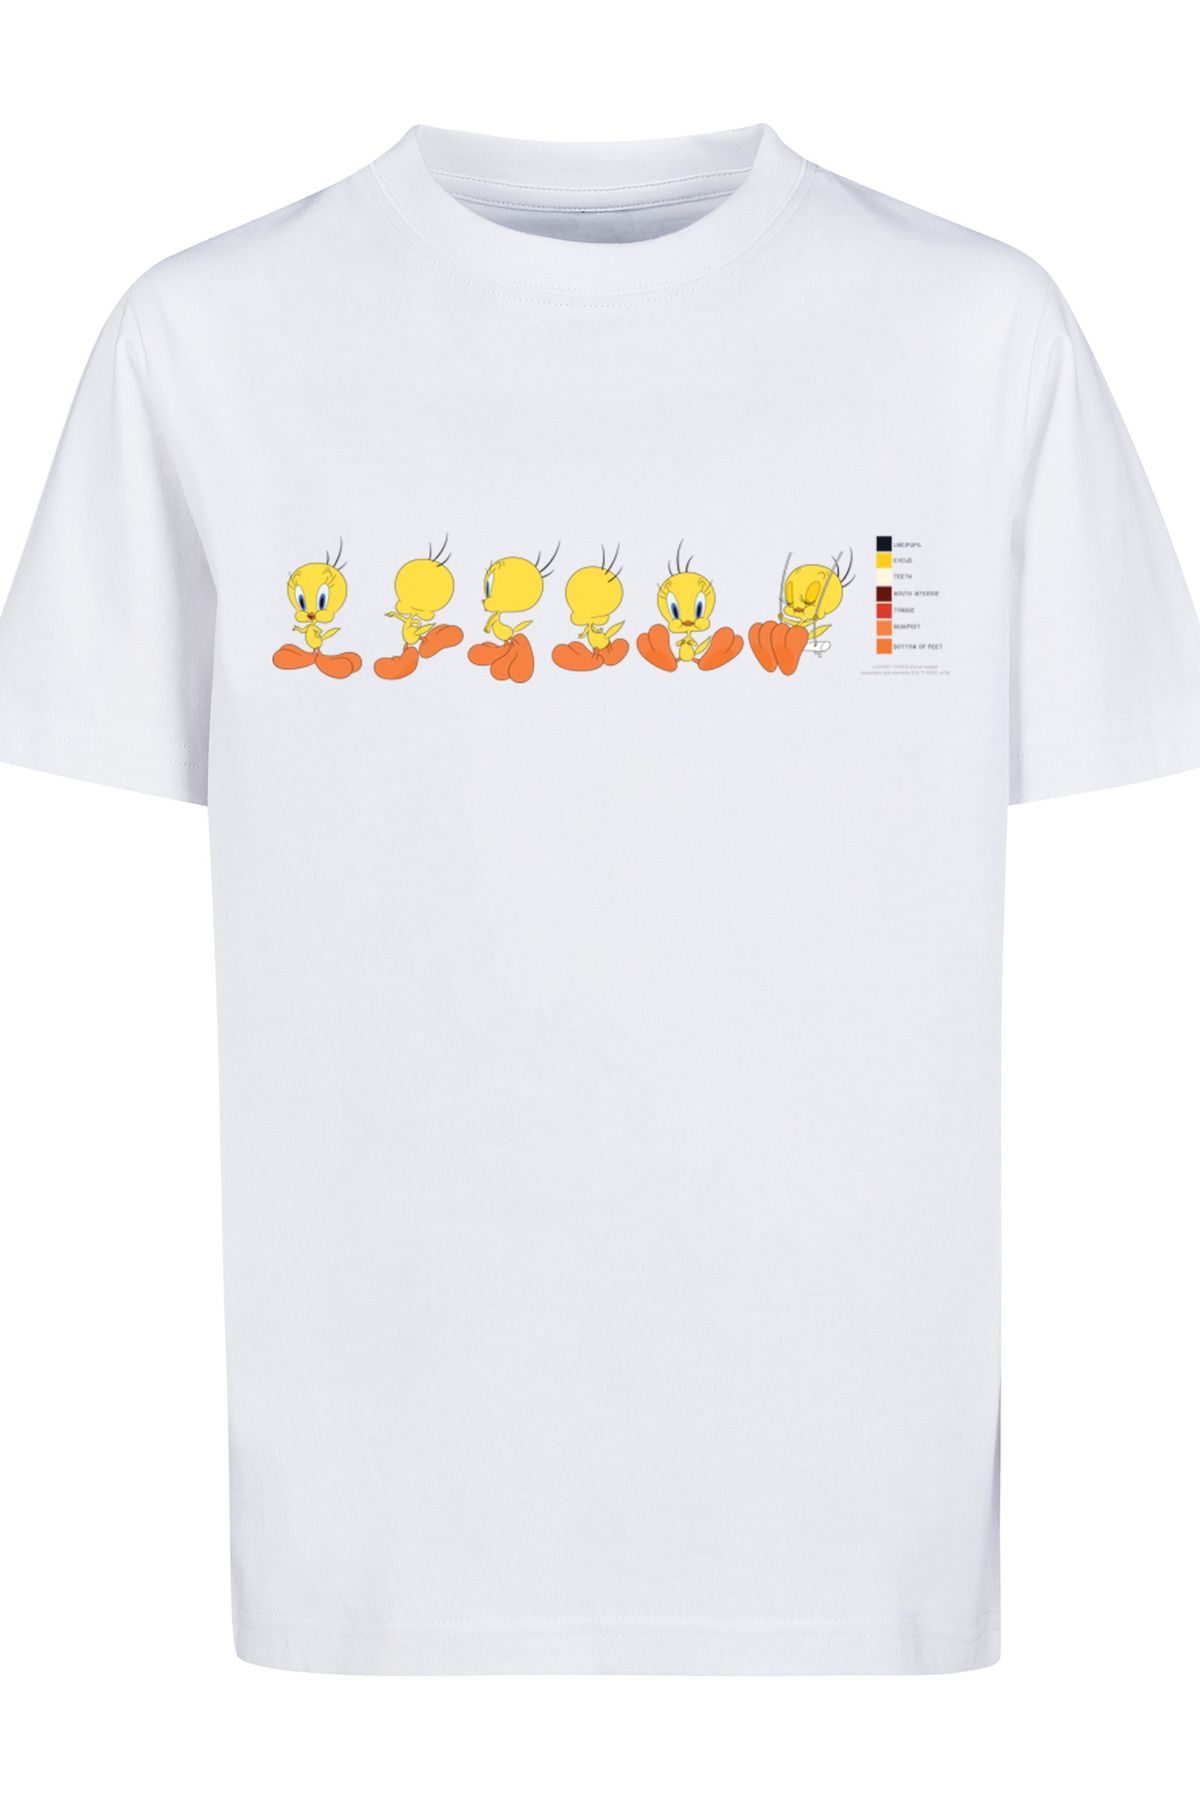 Kids Pie Trendyol Looney Basic F4NT4STIC Kinder mit Farbcode-WHT Tunes T-Shirt Tweety -